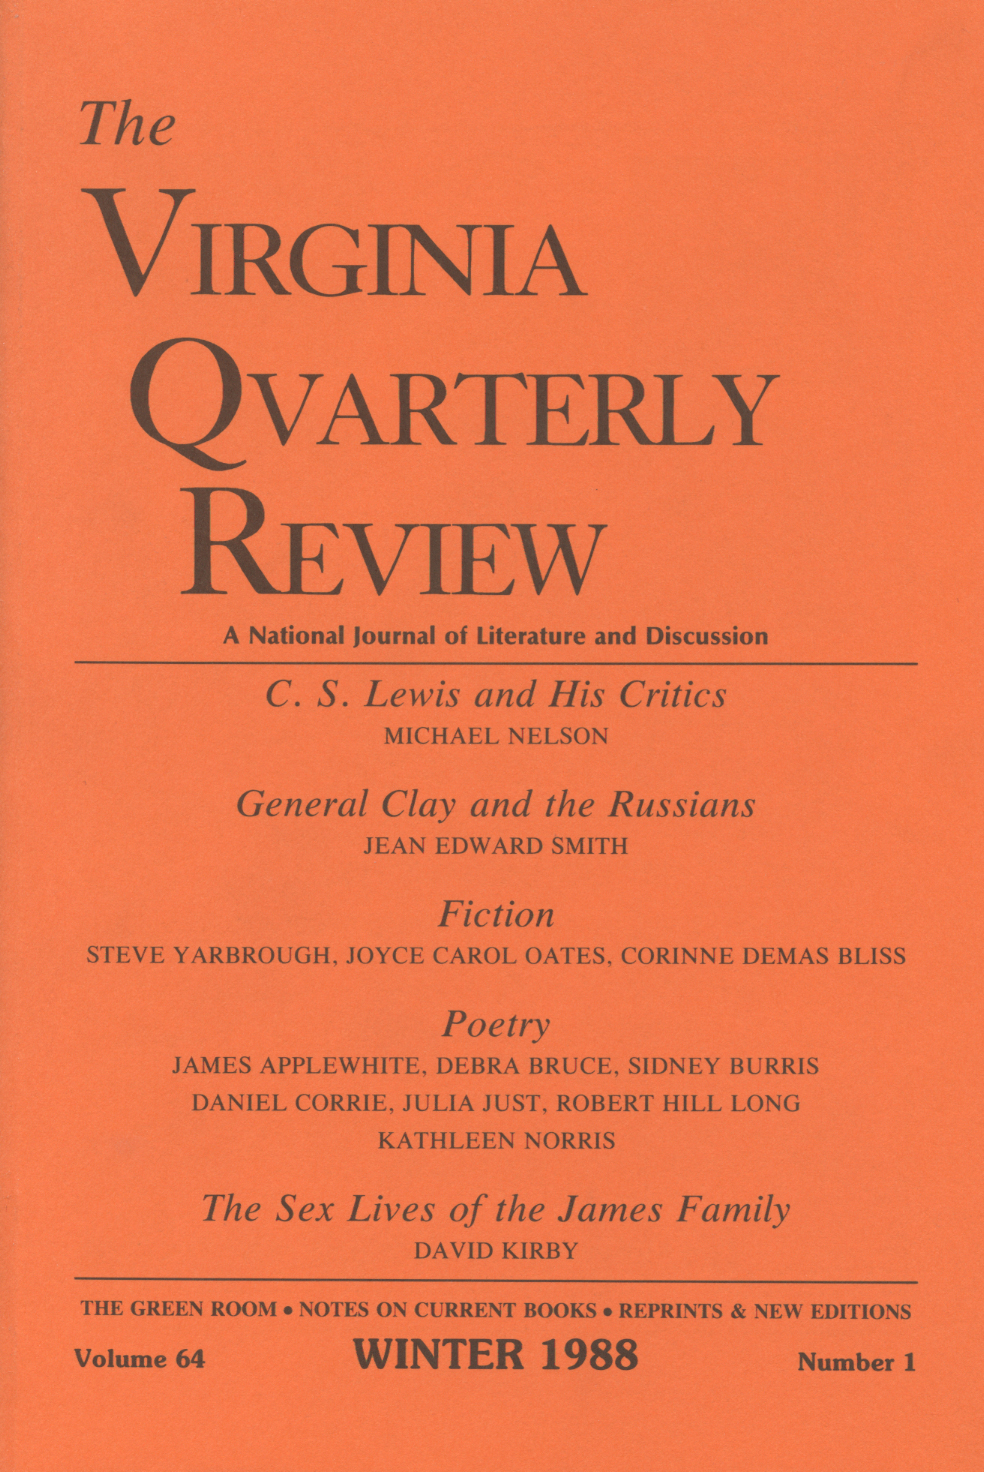 Virginia Quarterly Review, Winter 1988 cover